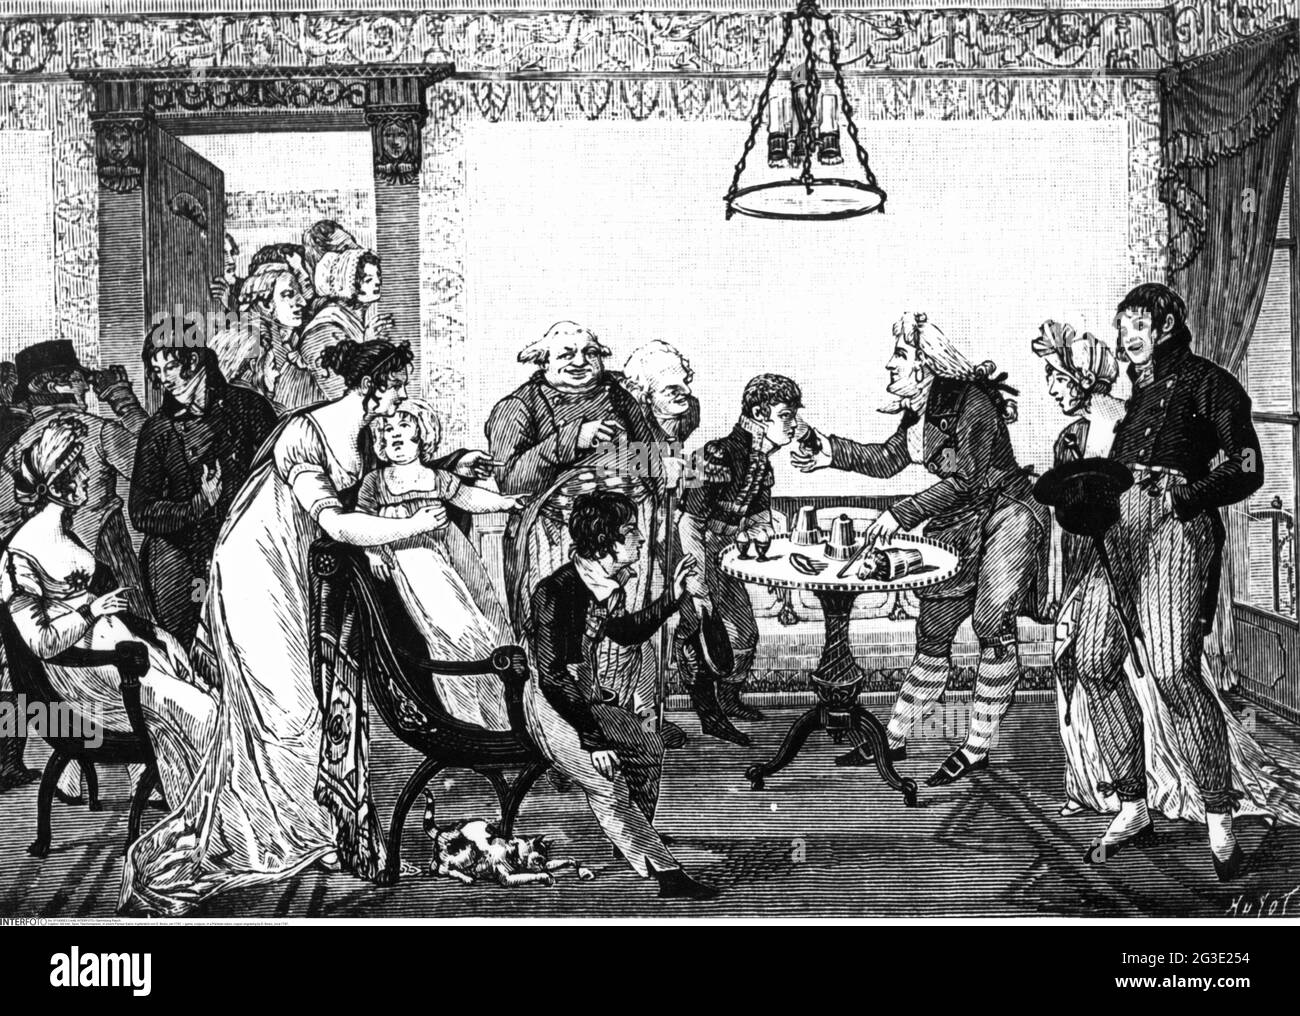 Spiel, Zauberer, in einem Pariser Salon, Kupferstich von D. Bosio, um 1797, DAS COPYRIGHT DES KÜNSTLERS MUSS NICHT GEKLONT WERDEN Stockfoto